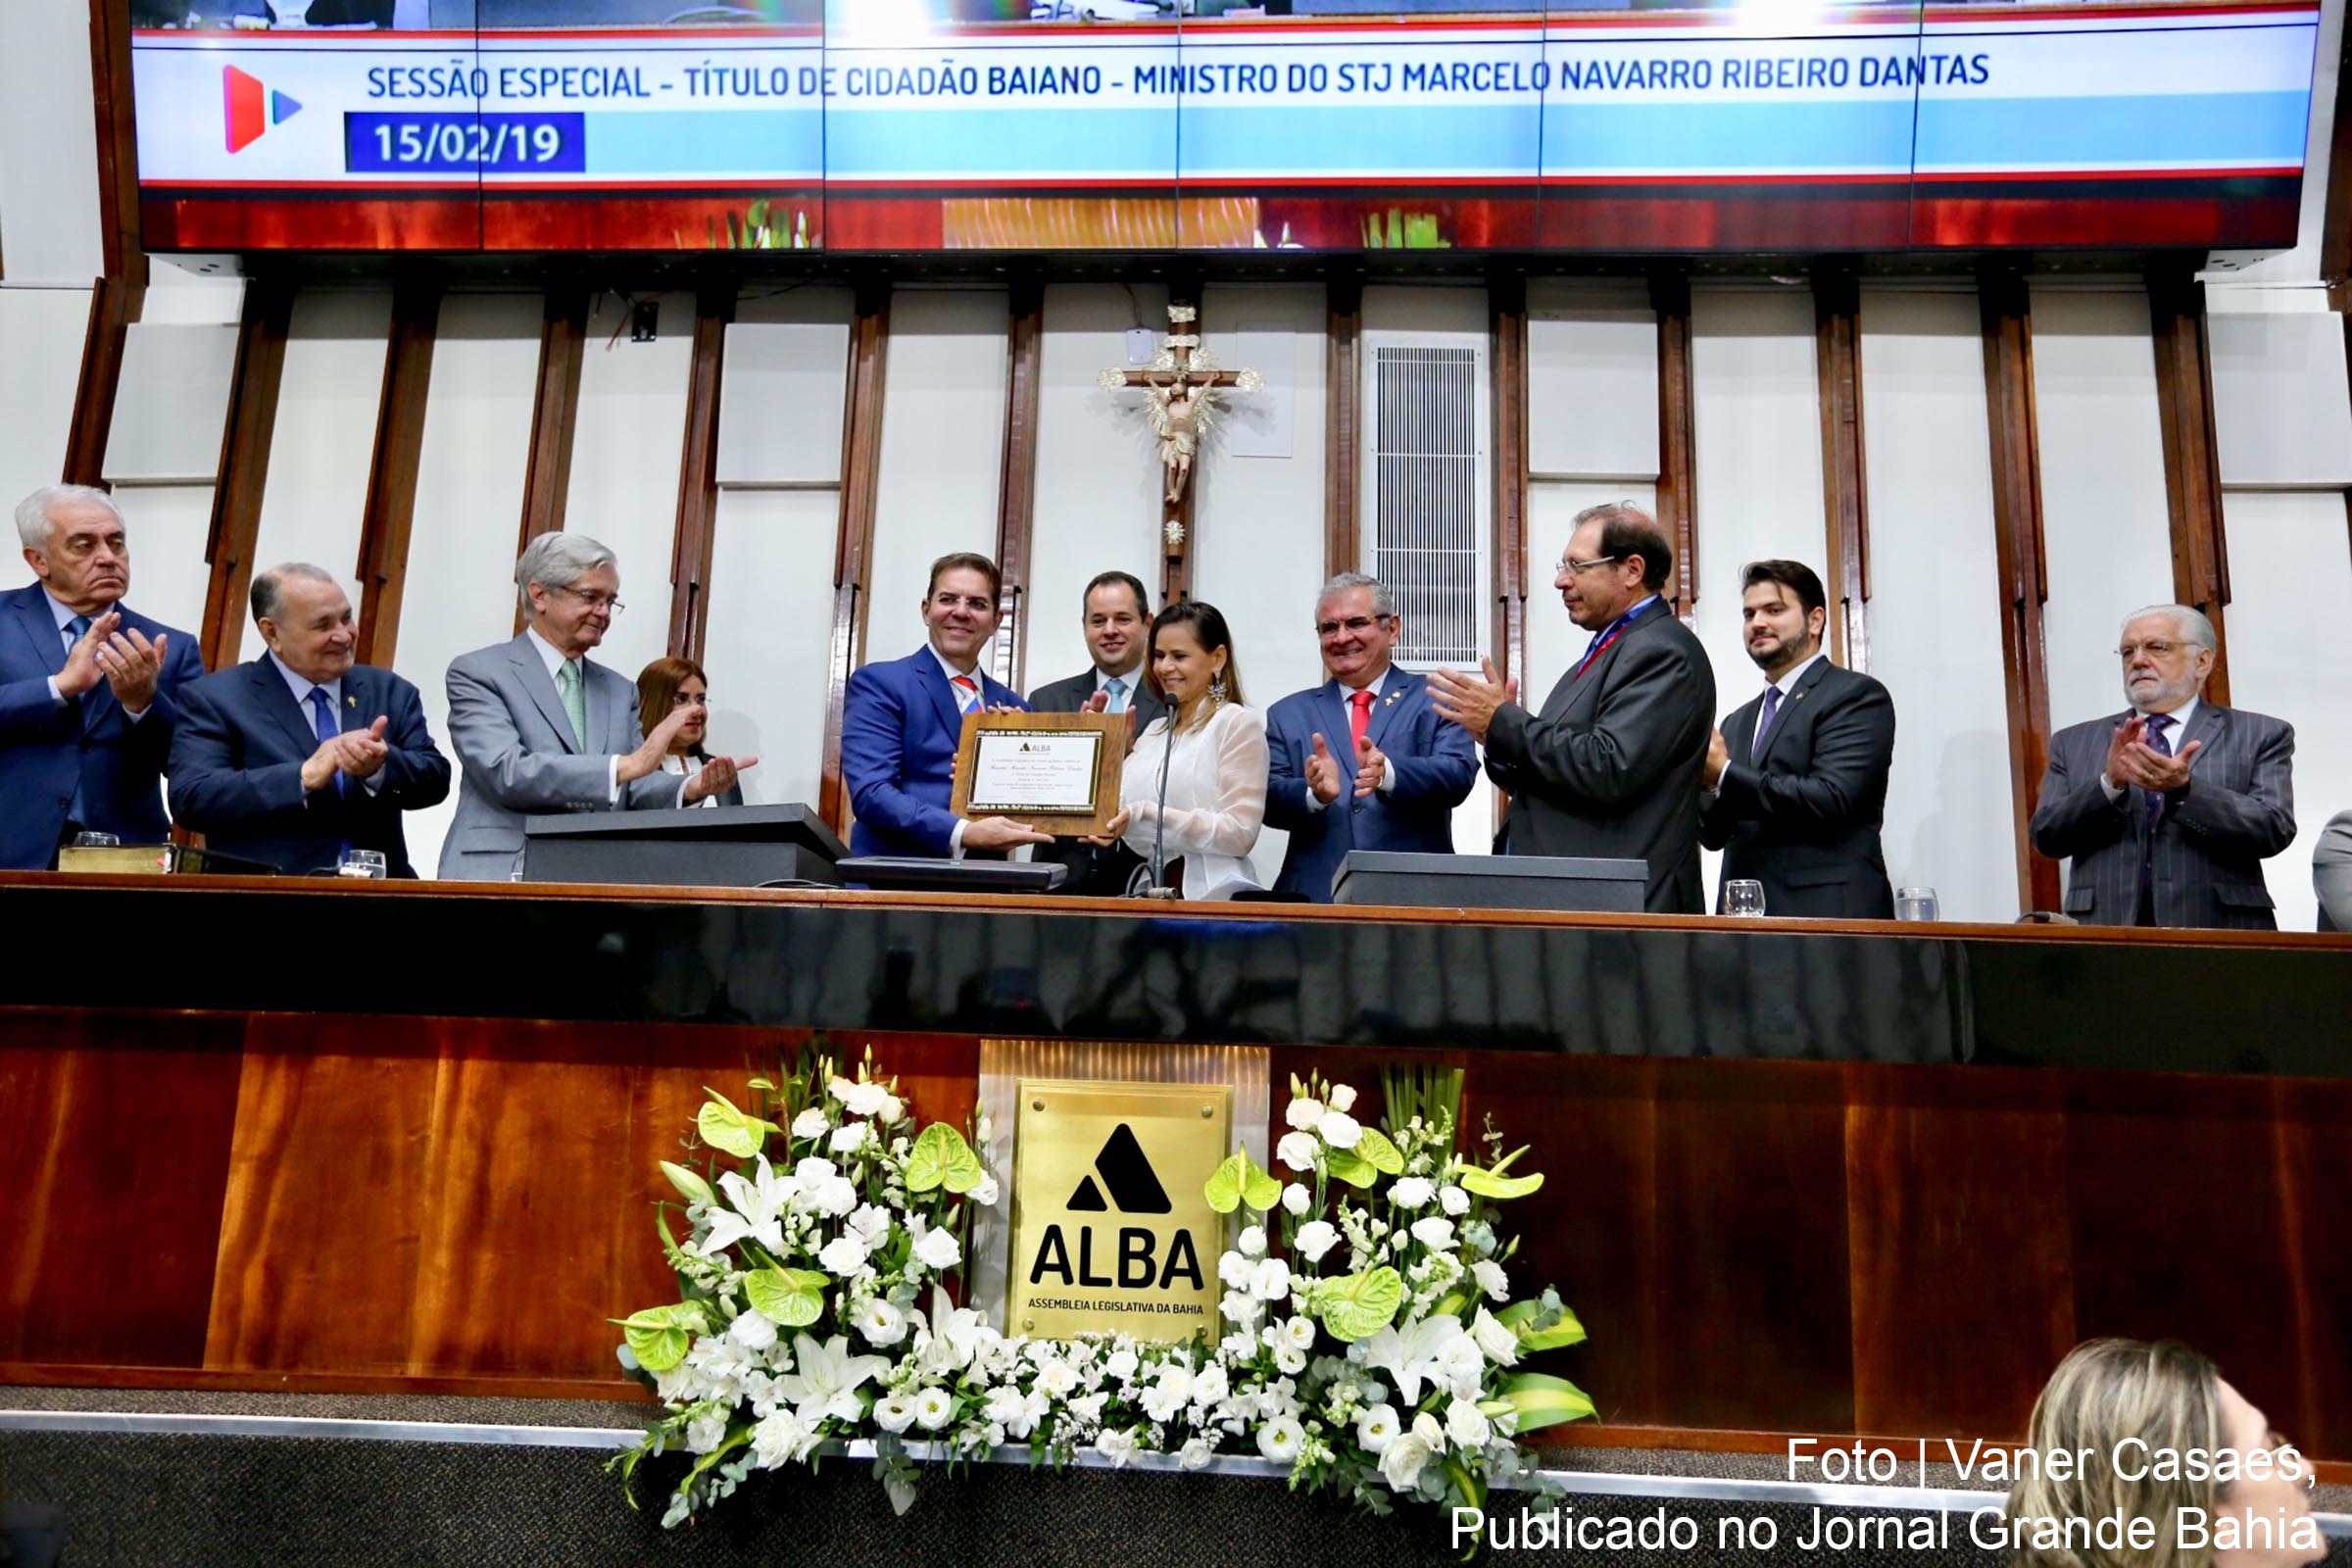 ALBA outorga título de Cidadão Baiano à Marcelo Navarro Ribeiro, ministro do Superior Tribunal de Justiça (STJ).